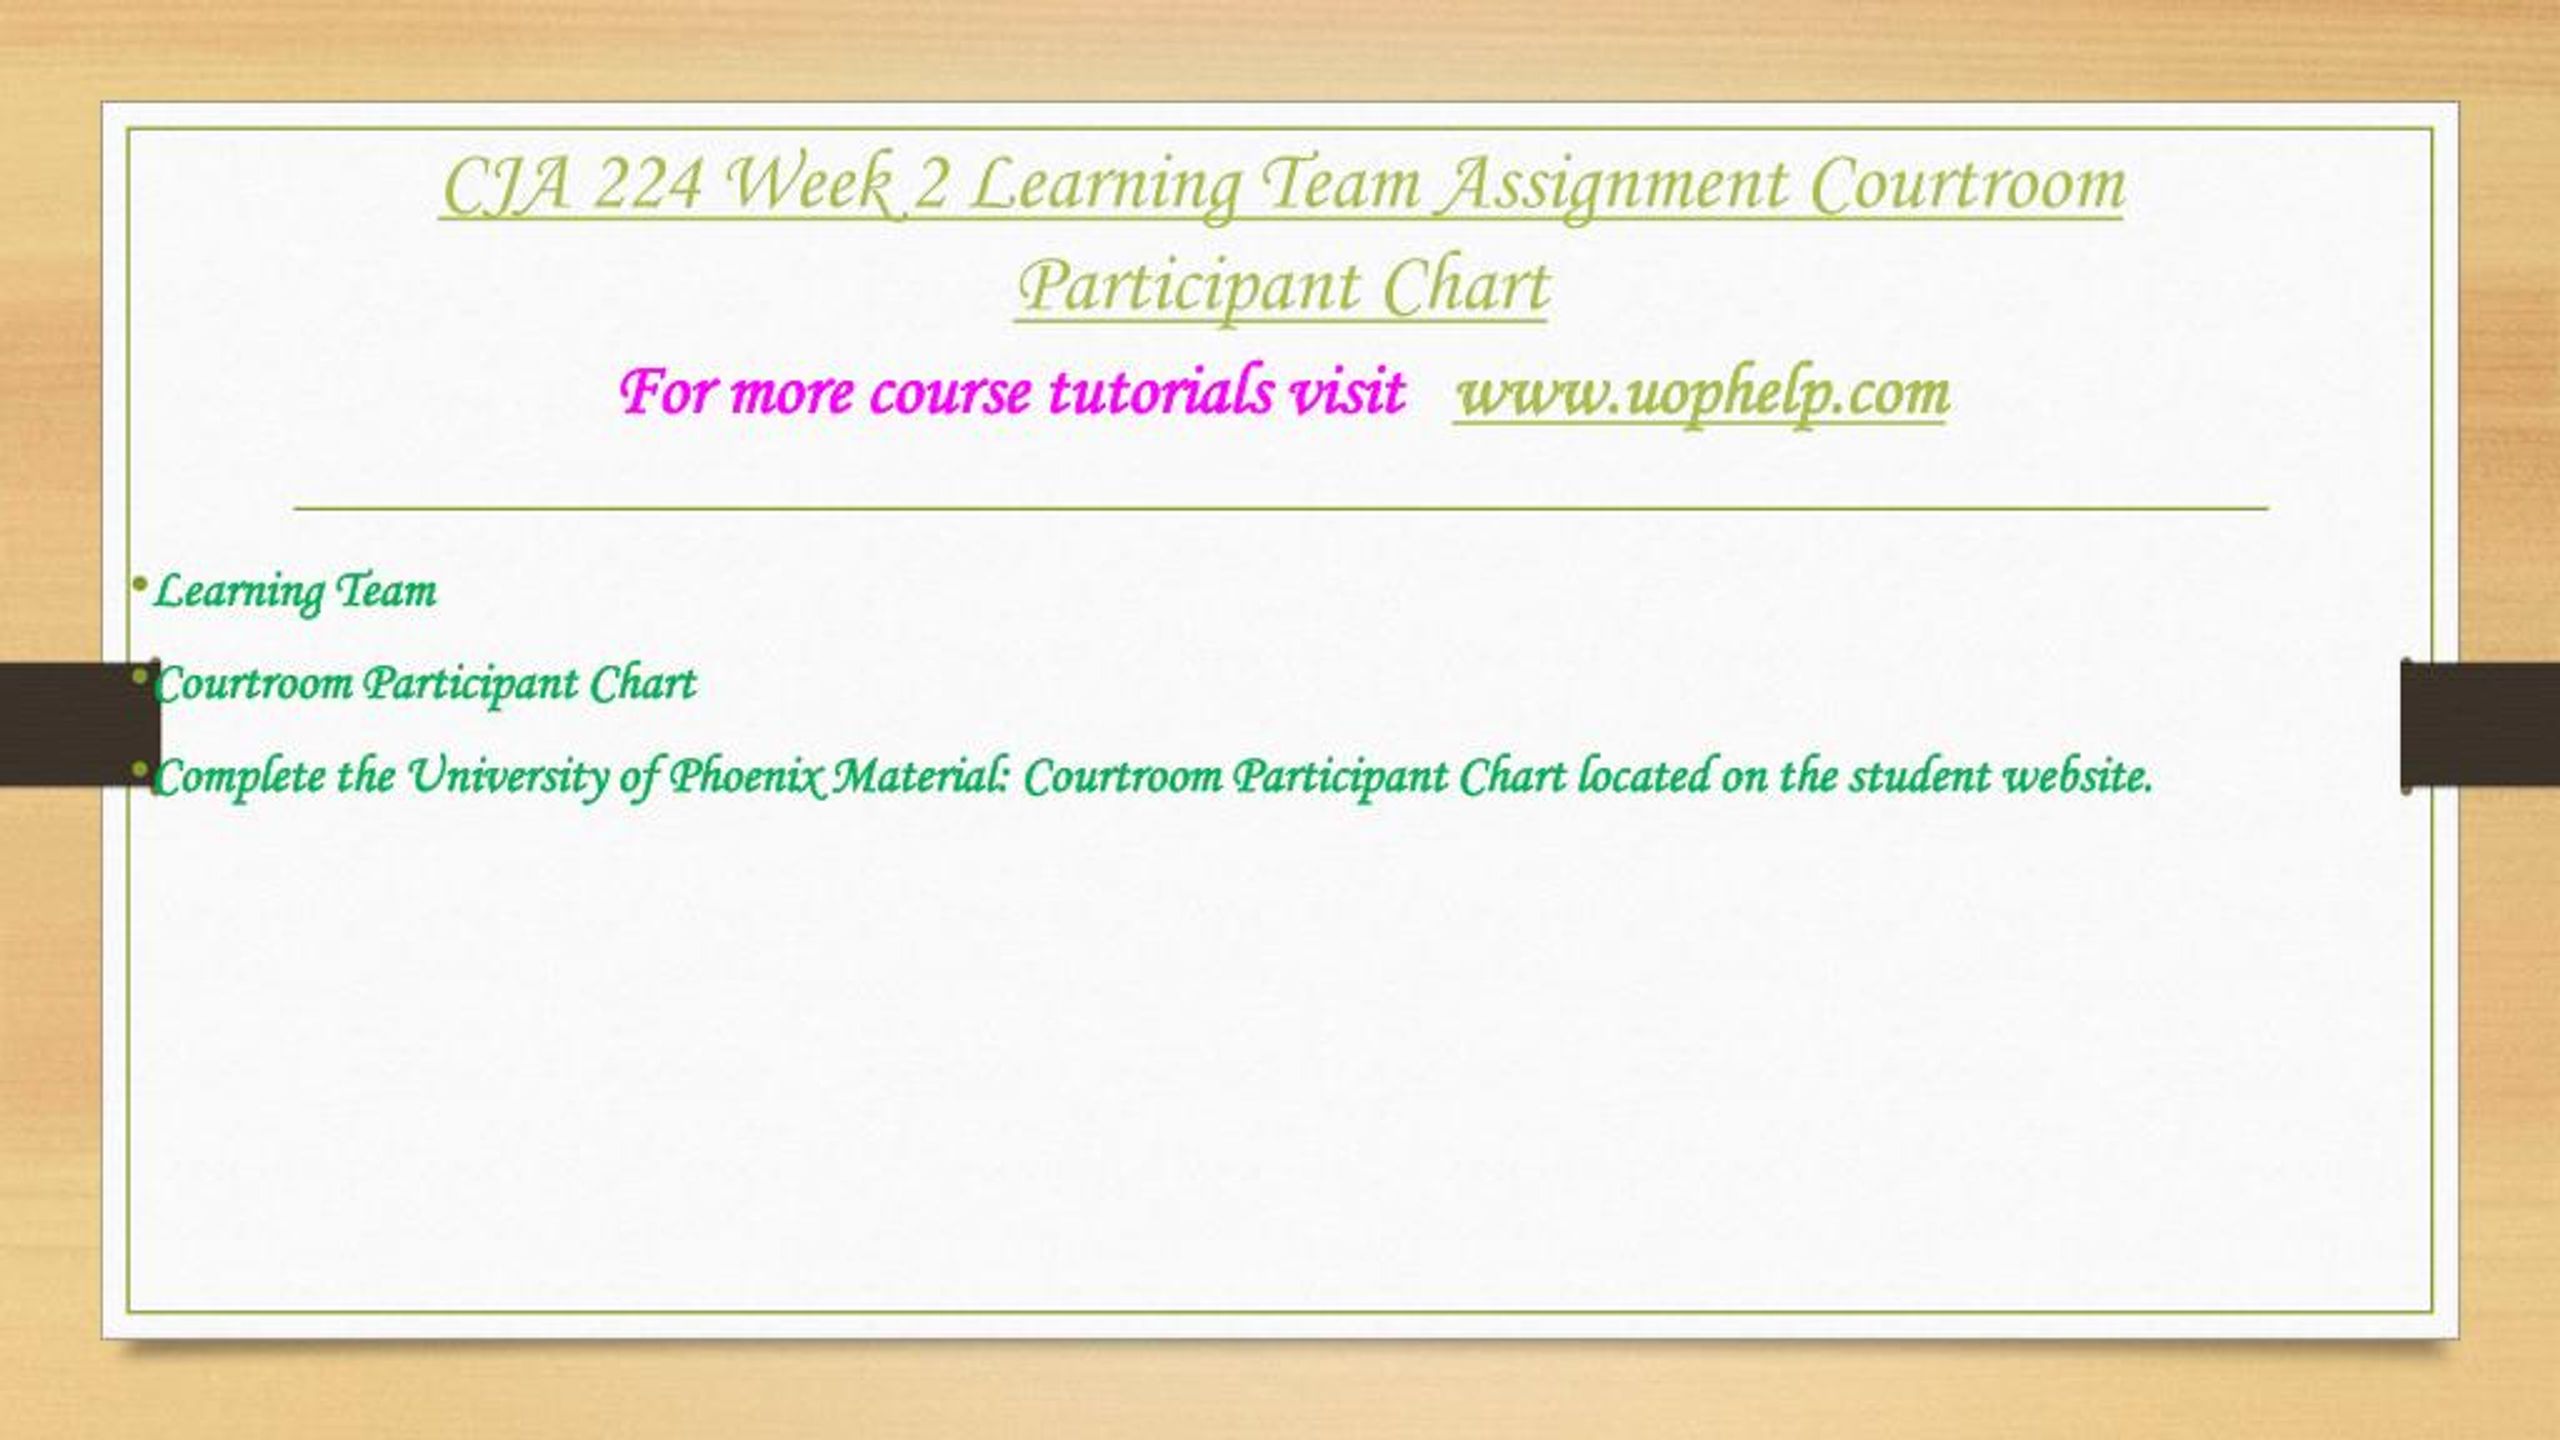 Courtroom Participant Chart